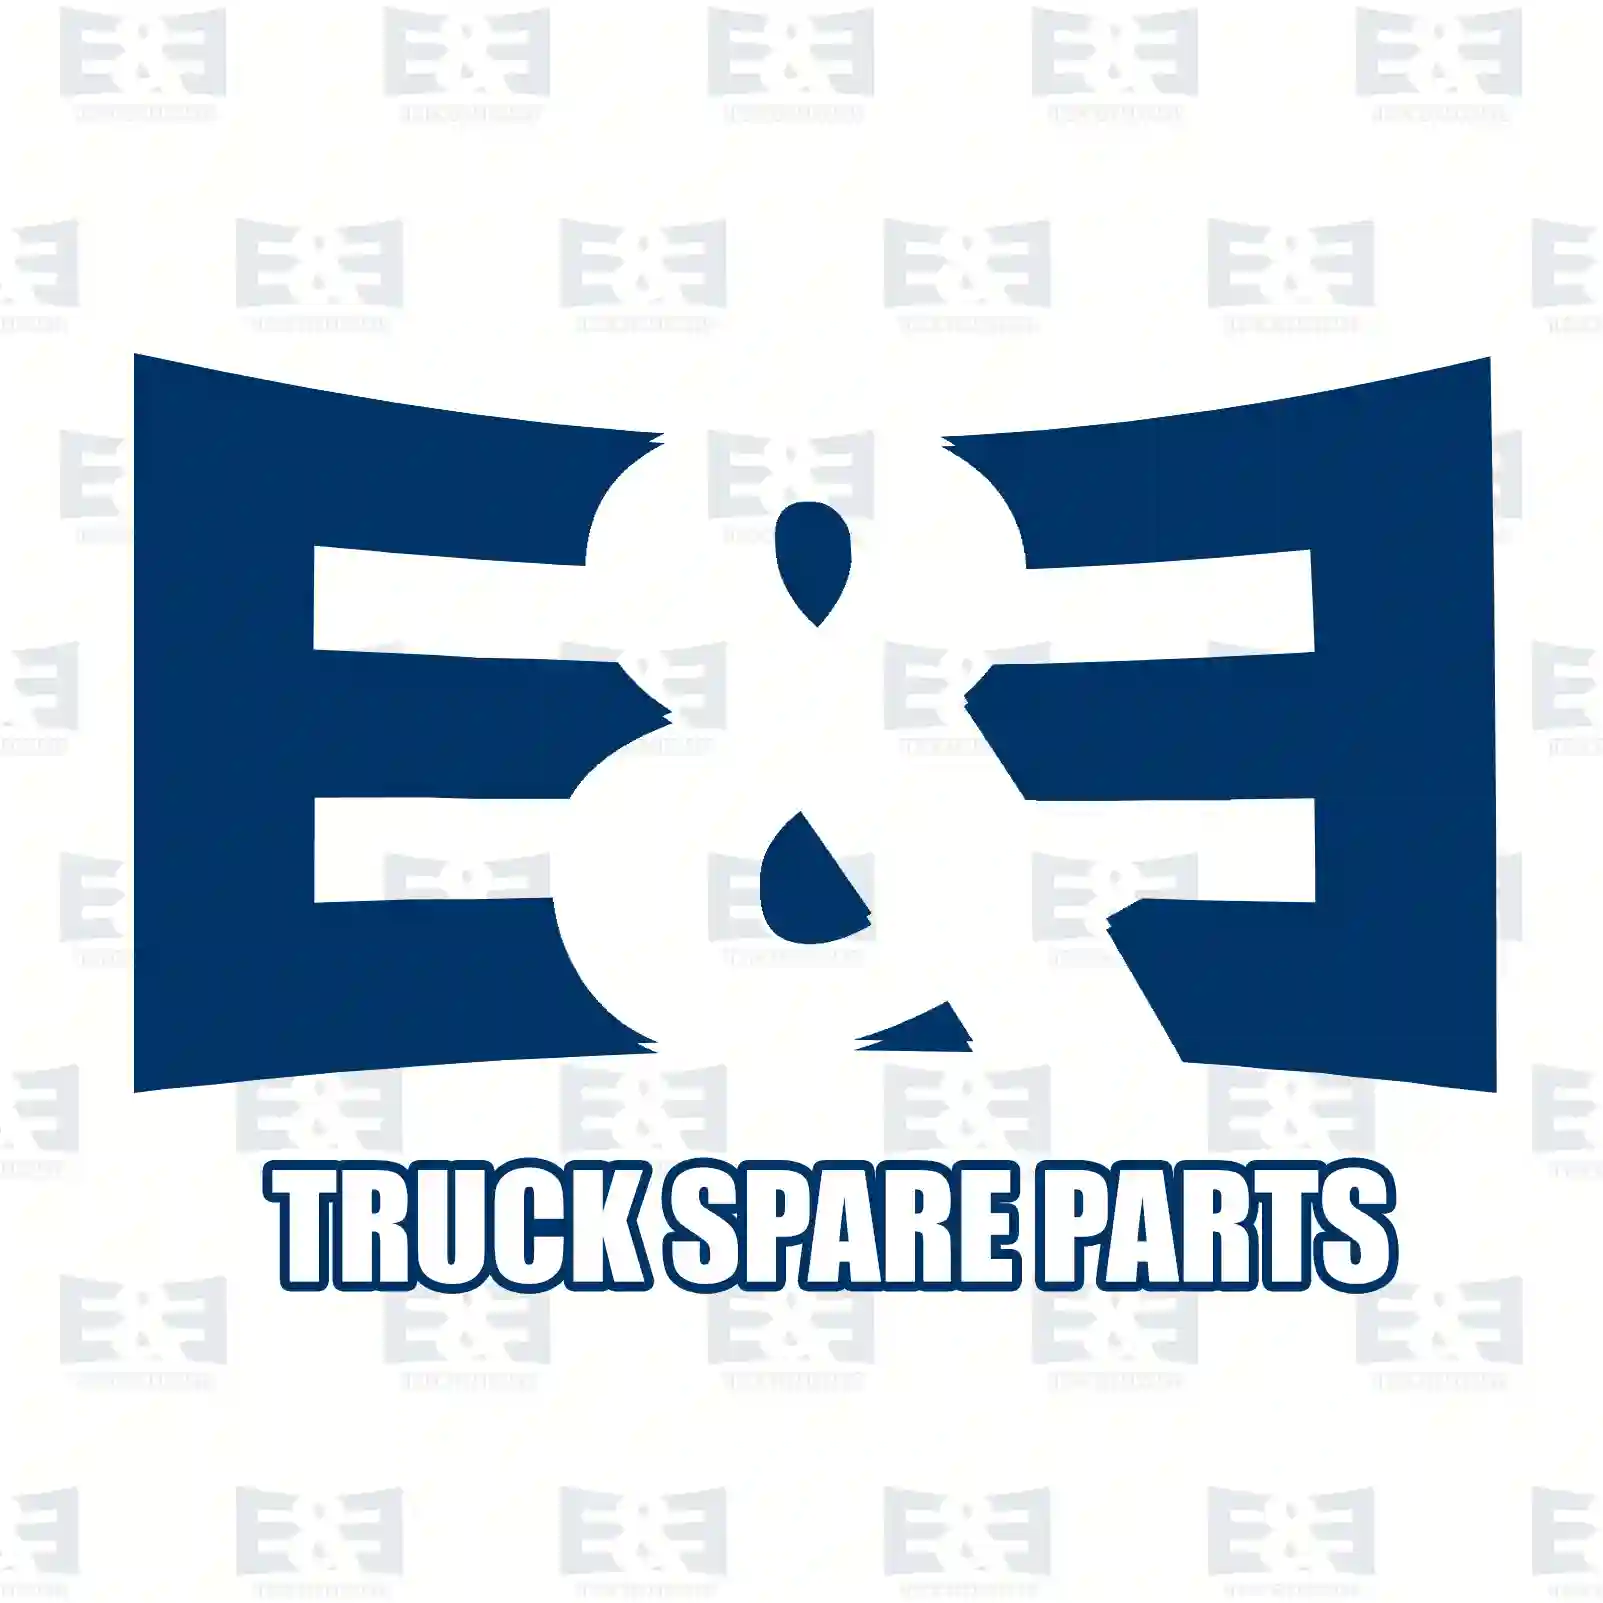 Air filter, complete, 2E2204431, 1335674, 1387542, ZG00868-0008 ||  2E2204431 E&E Truck Spare Parts | Truck Spare Parts, Auotomotive Spare Parts Air filter, complete, 2E2204431, 1335674, 1387542, ZG00868-0008 ||  2E2204431 E&E Truck Spare Parts | Truck Spare Parts, Auotomotive Spare Parts